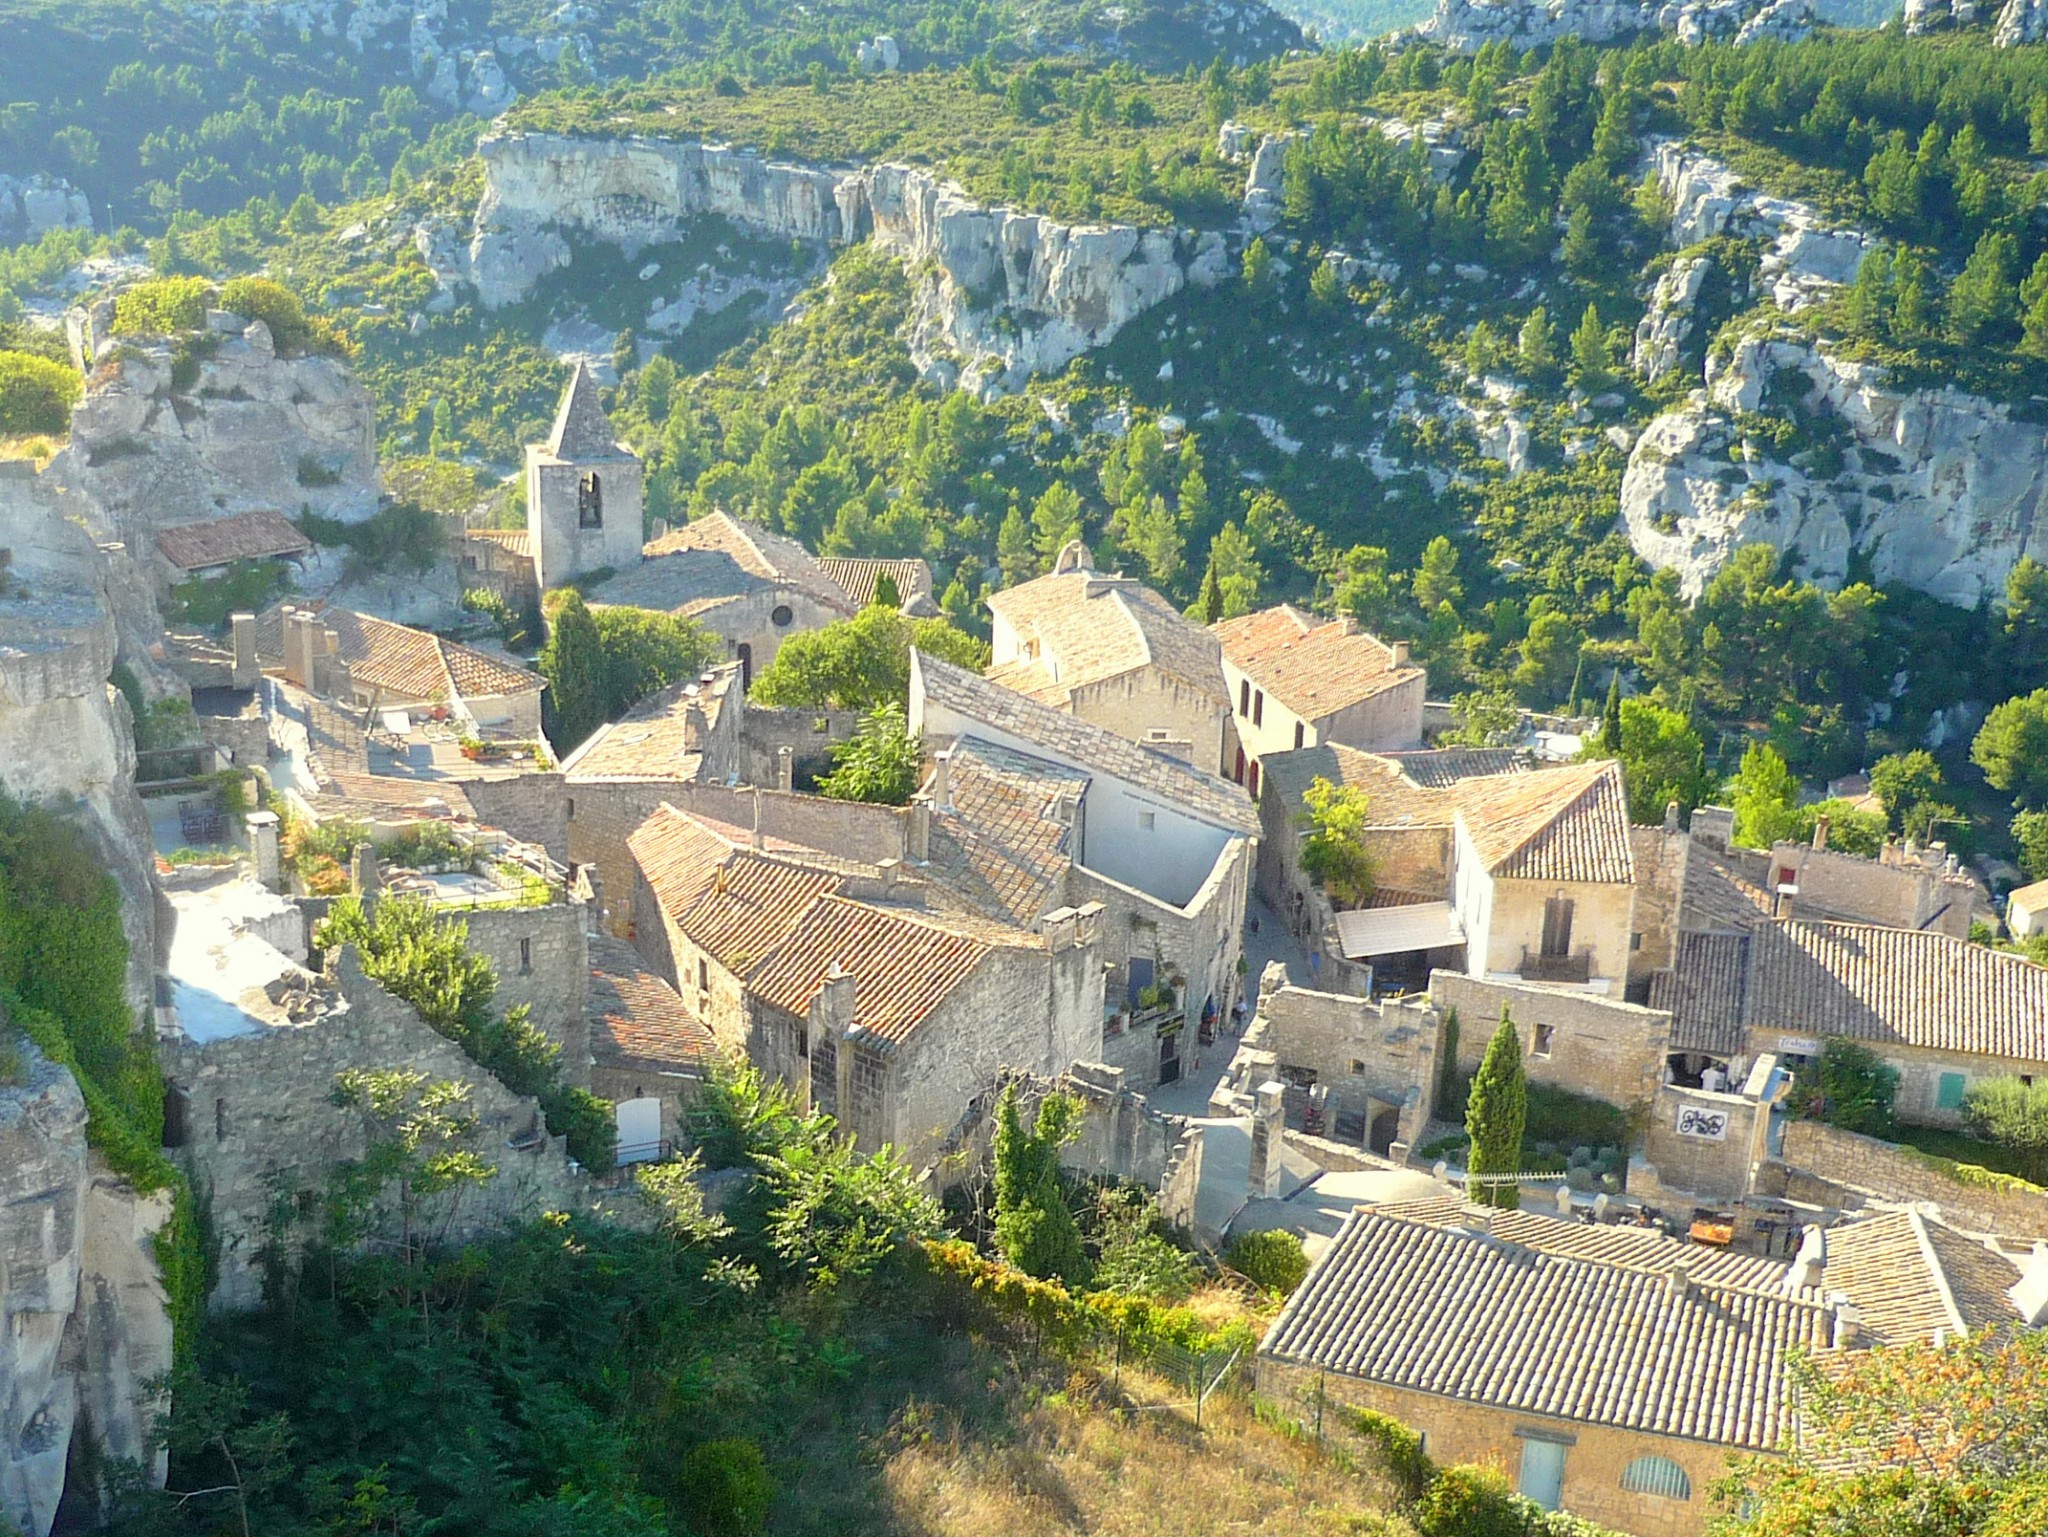 The village of Les Baux-de-Provence © French Moments